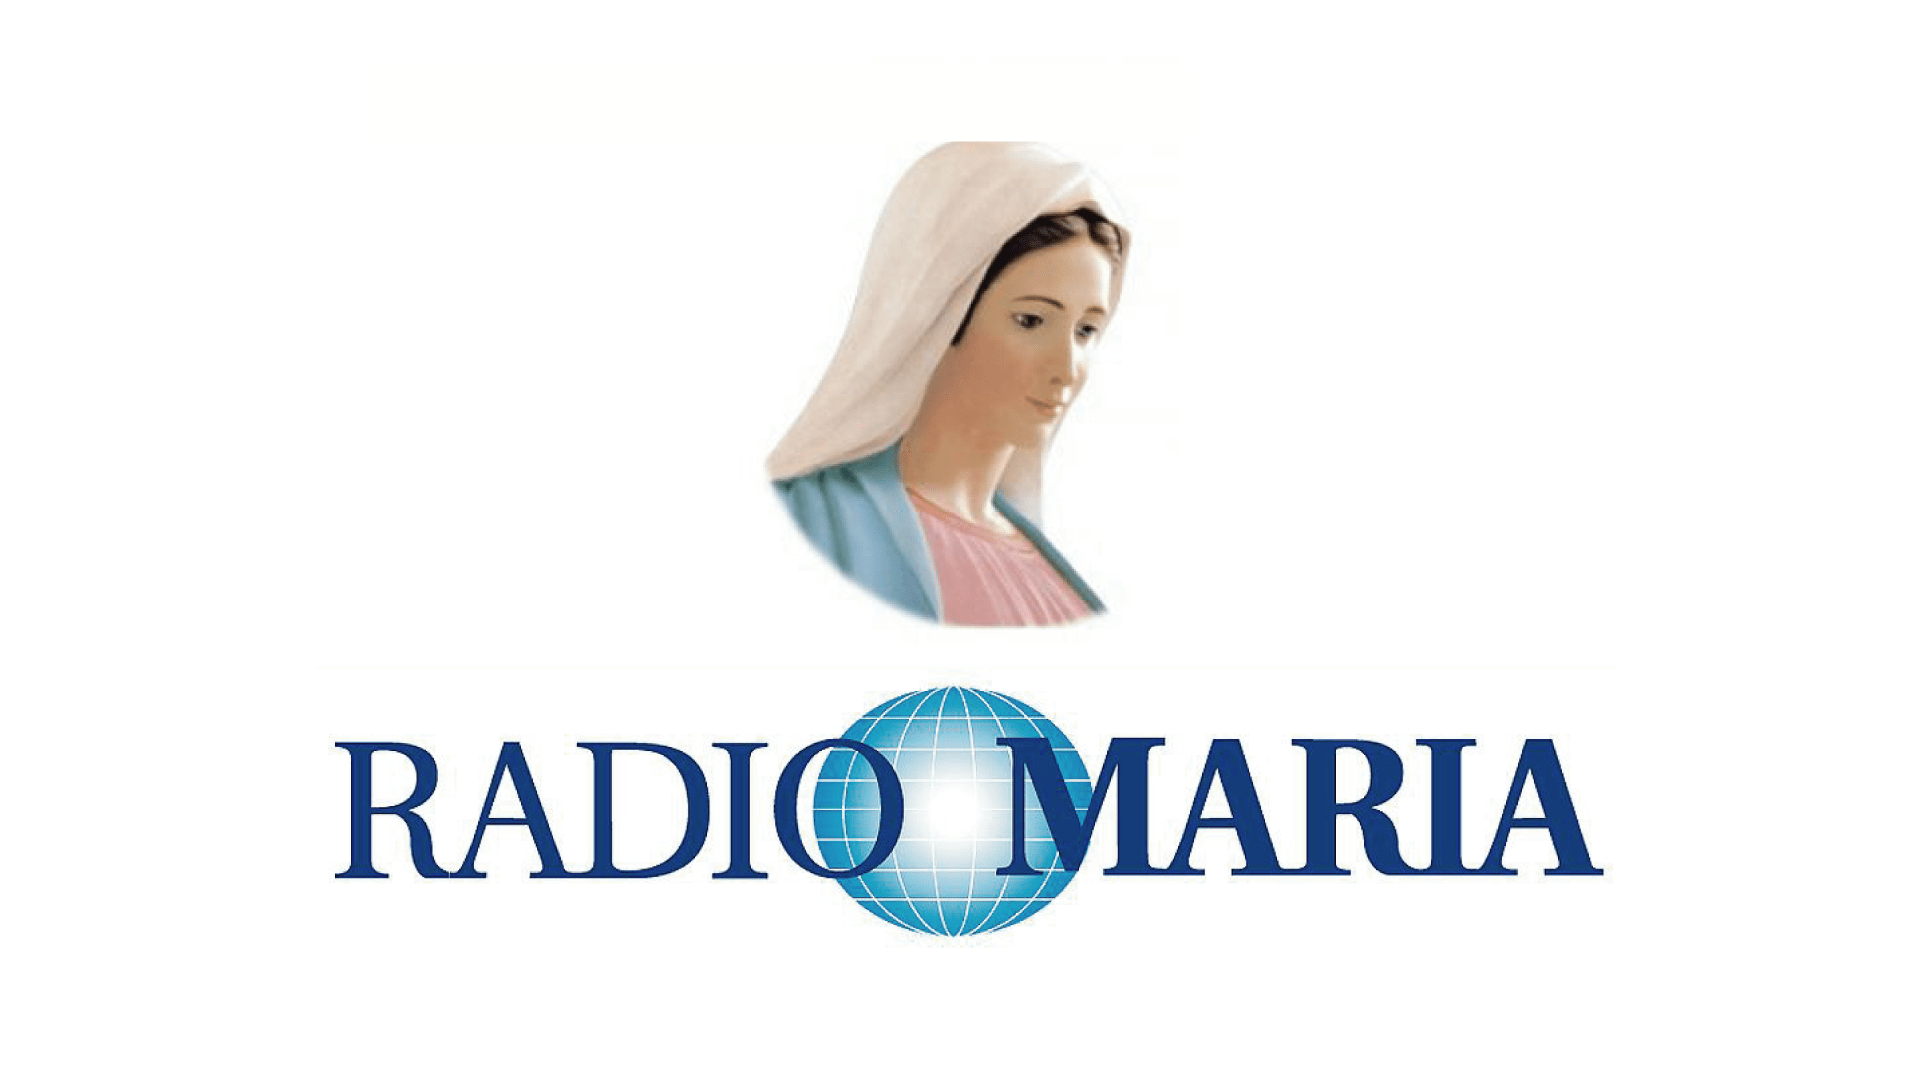 RADIO MARIA